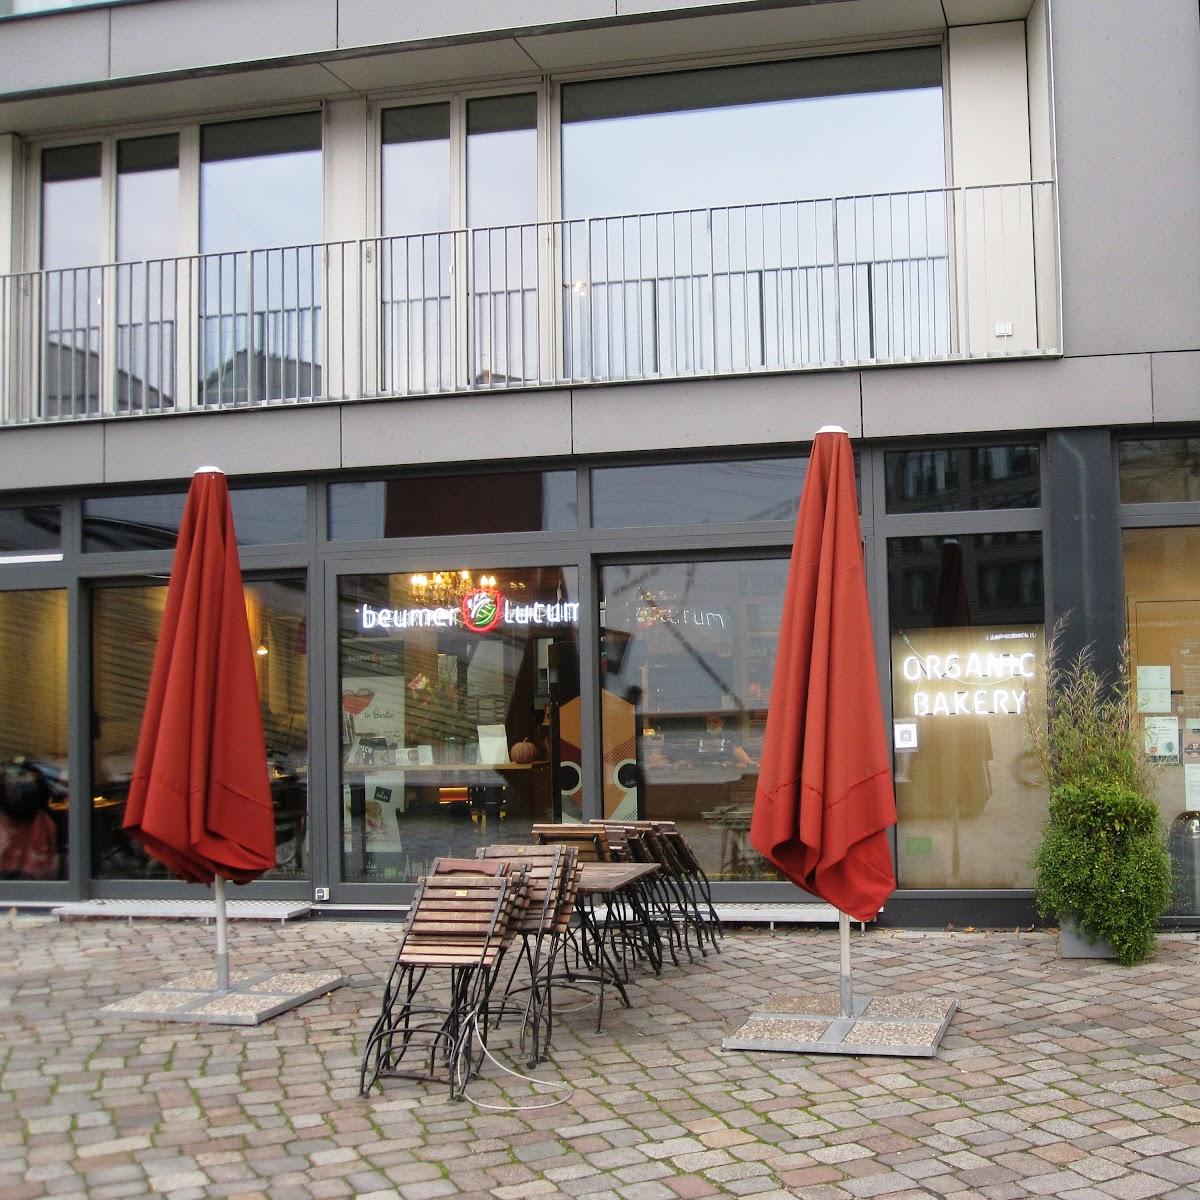 Restaurant "Beumer & Lutum Bio Bäckerei & Café im Metropolenhaus" in Berlin